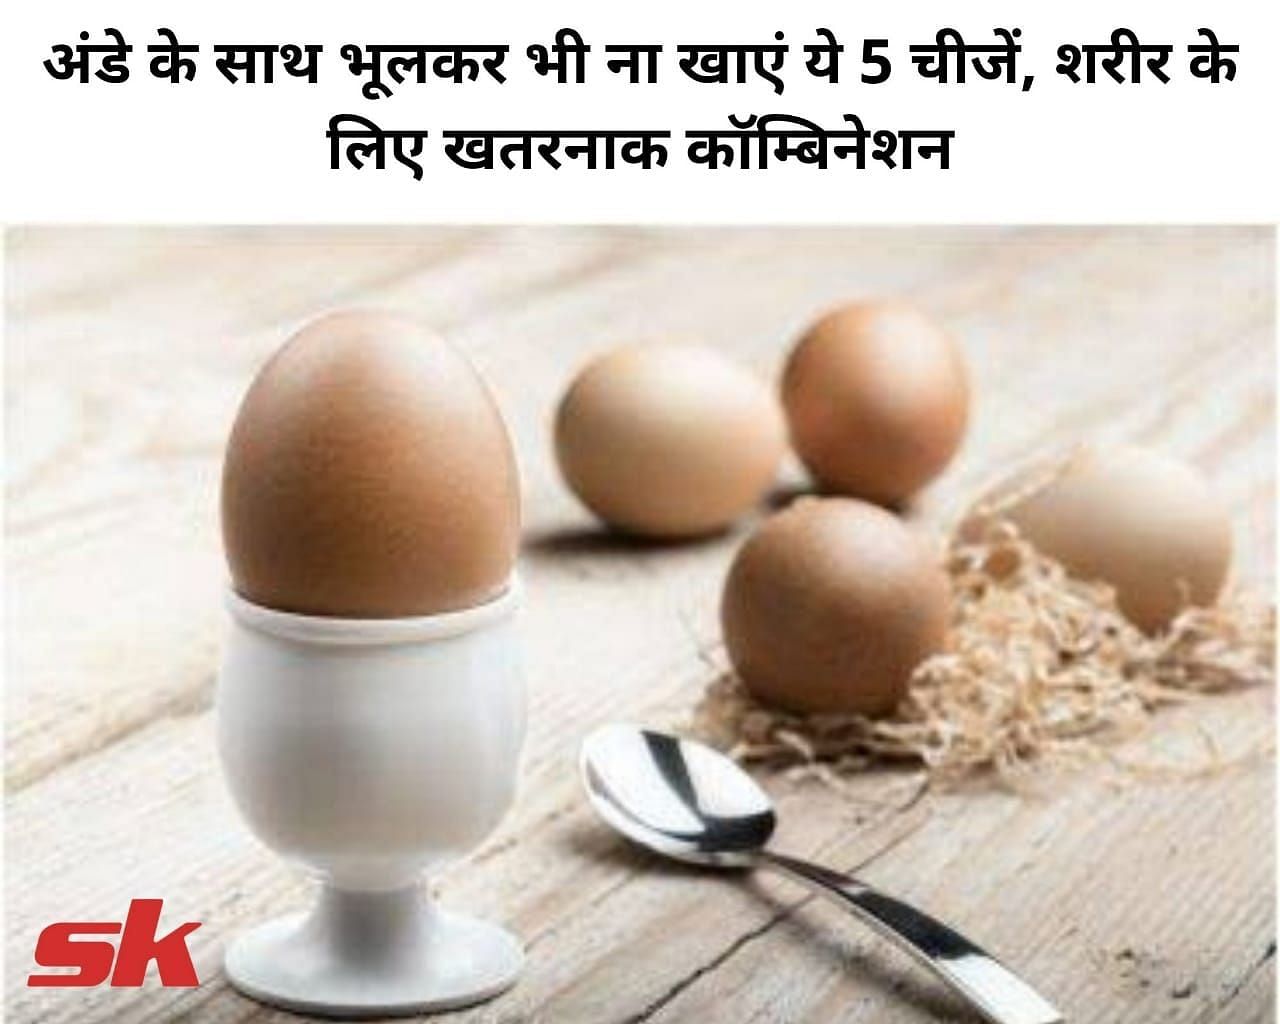 अंडे के साथ भूलकर भी ना खाएं ये 5 चीजें, शरीर के लिए खतरनाक कॉम्बिनेशन (फोटो - sportskeeda hindi)